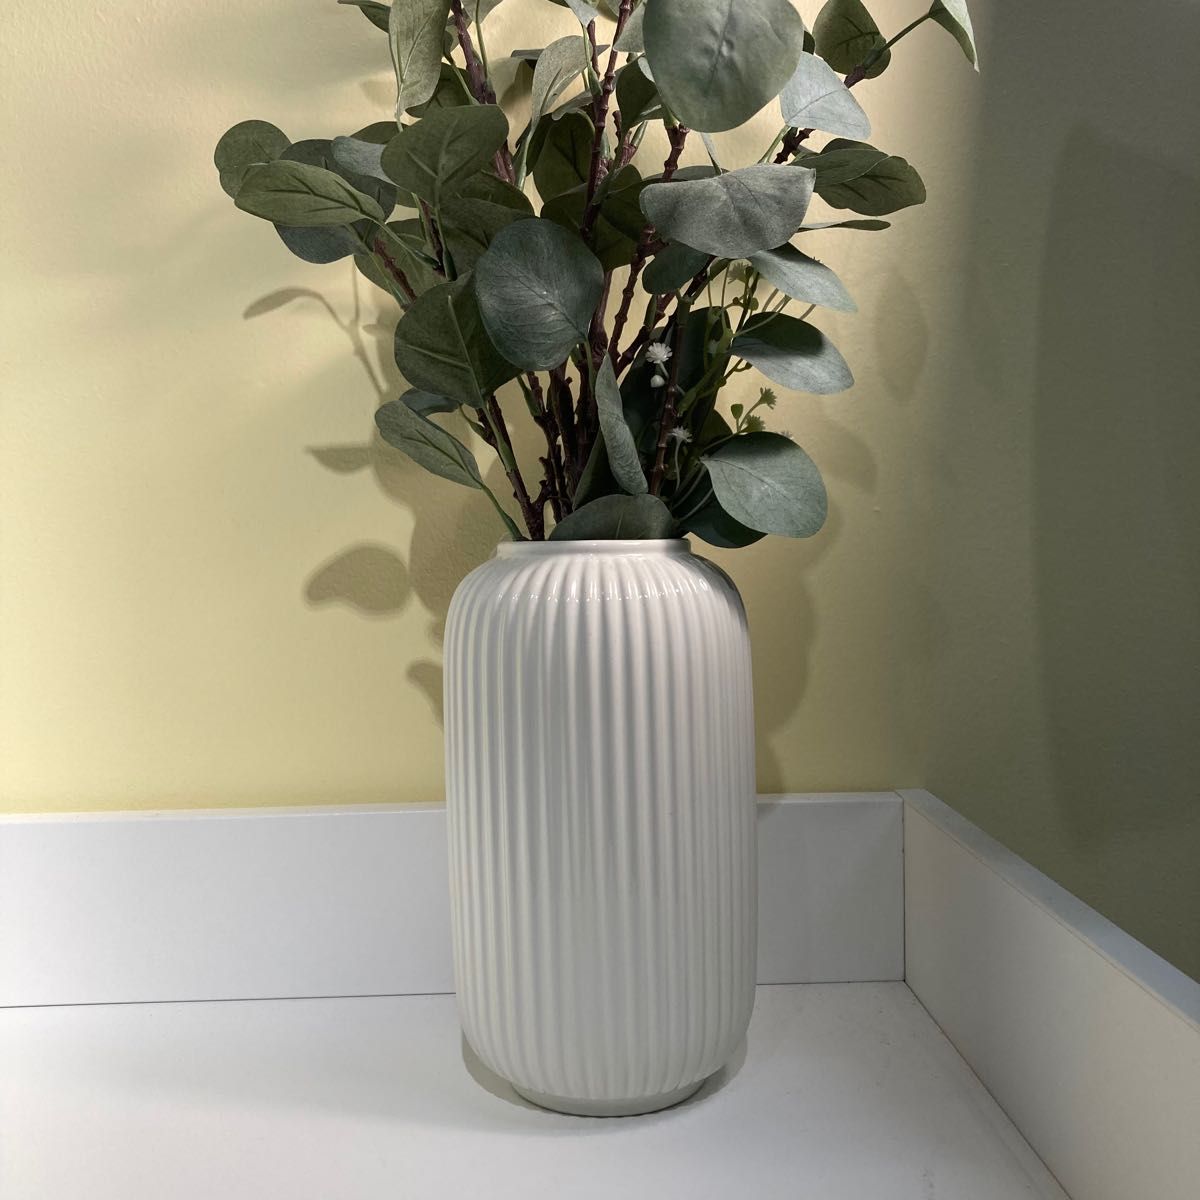 【新品・未使用】 イケア フラワーベース 人気の2種セット ヴィリエスタルク  スティルレーン  シックな花瓶です。 花器